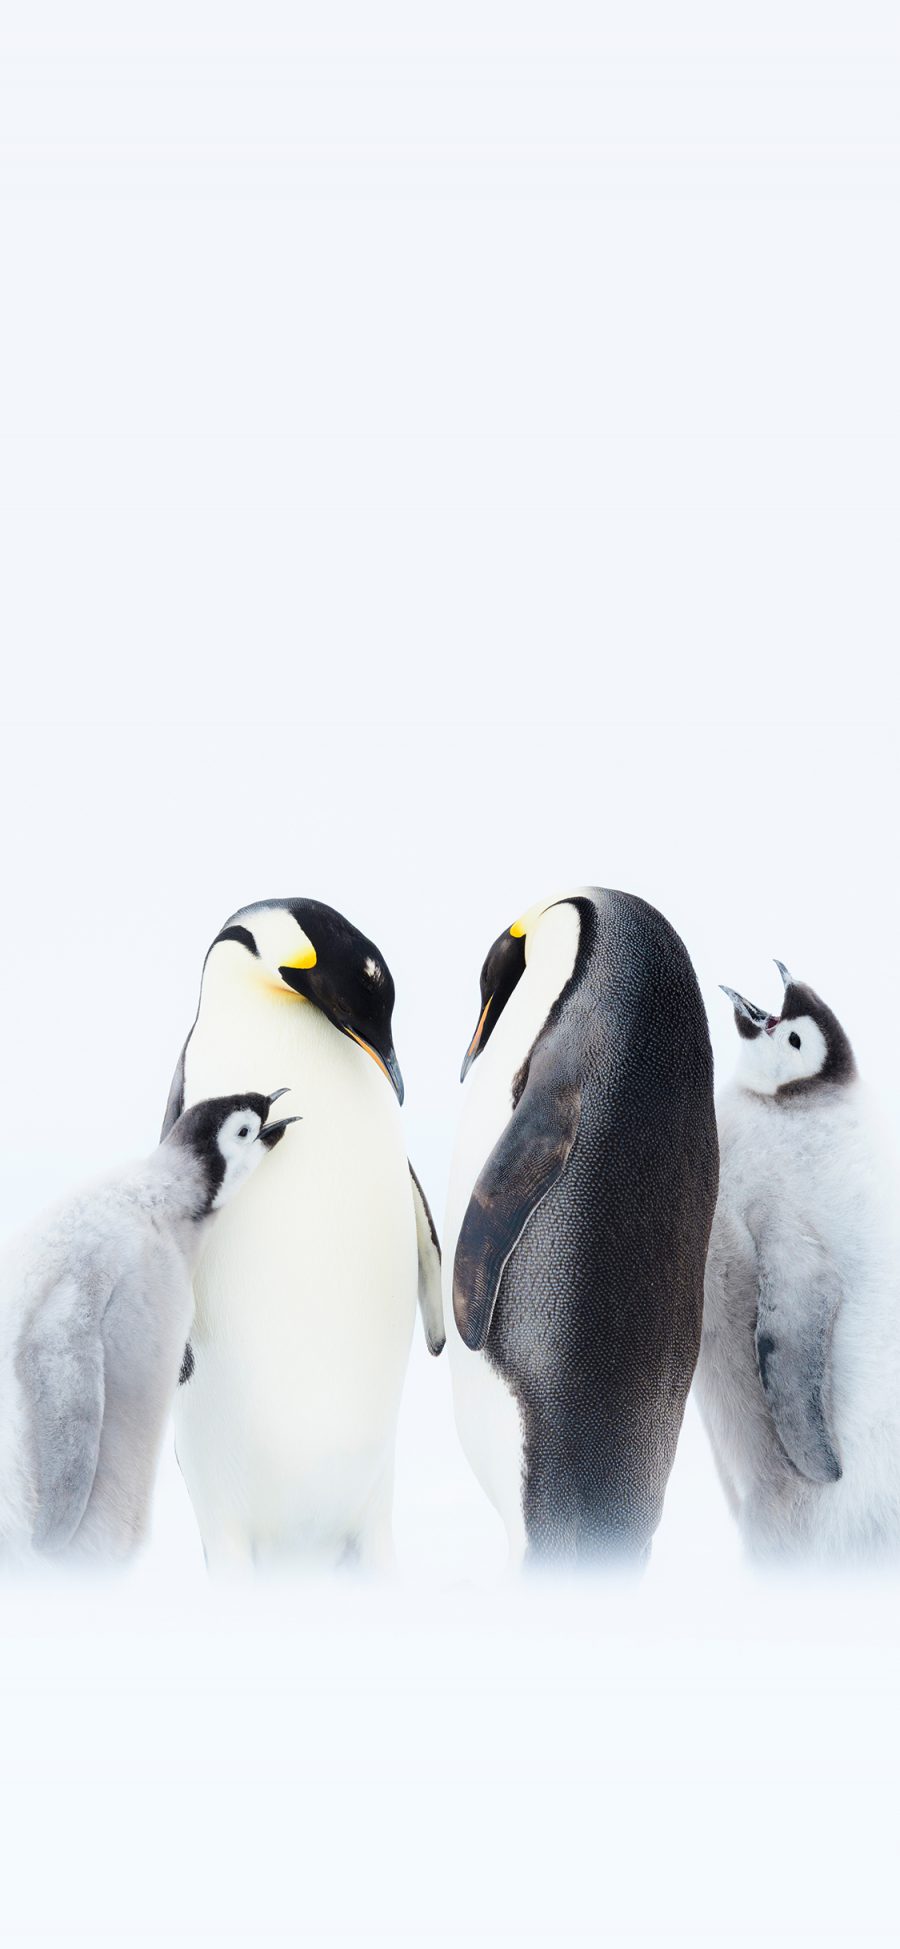 [2436×1125]企鹅 南极 寒冷 王朝纪录片 苹果手机壁纸图片